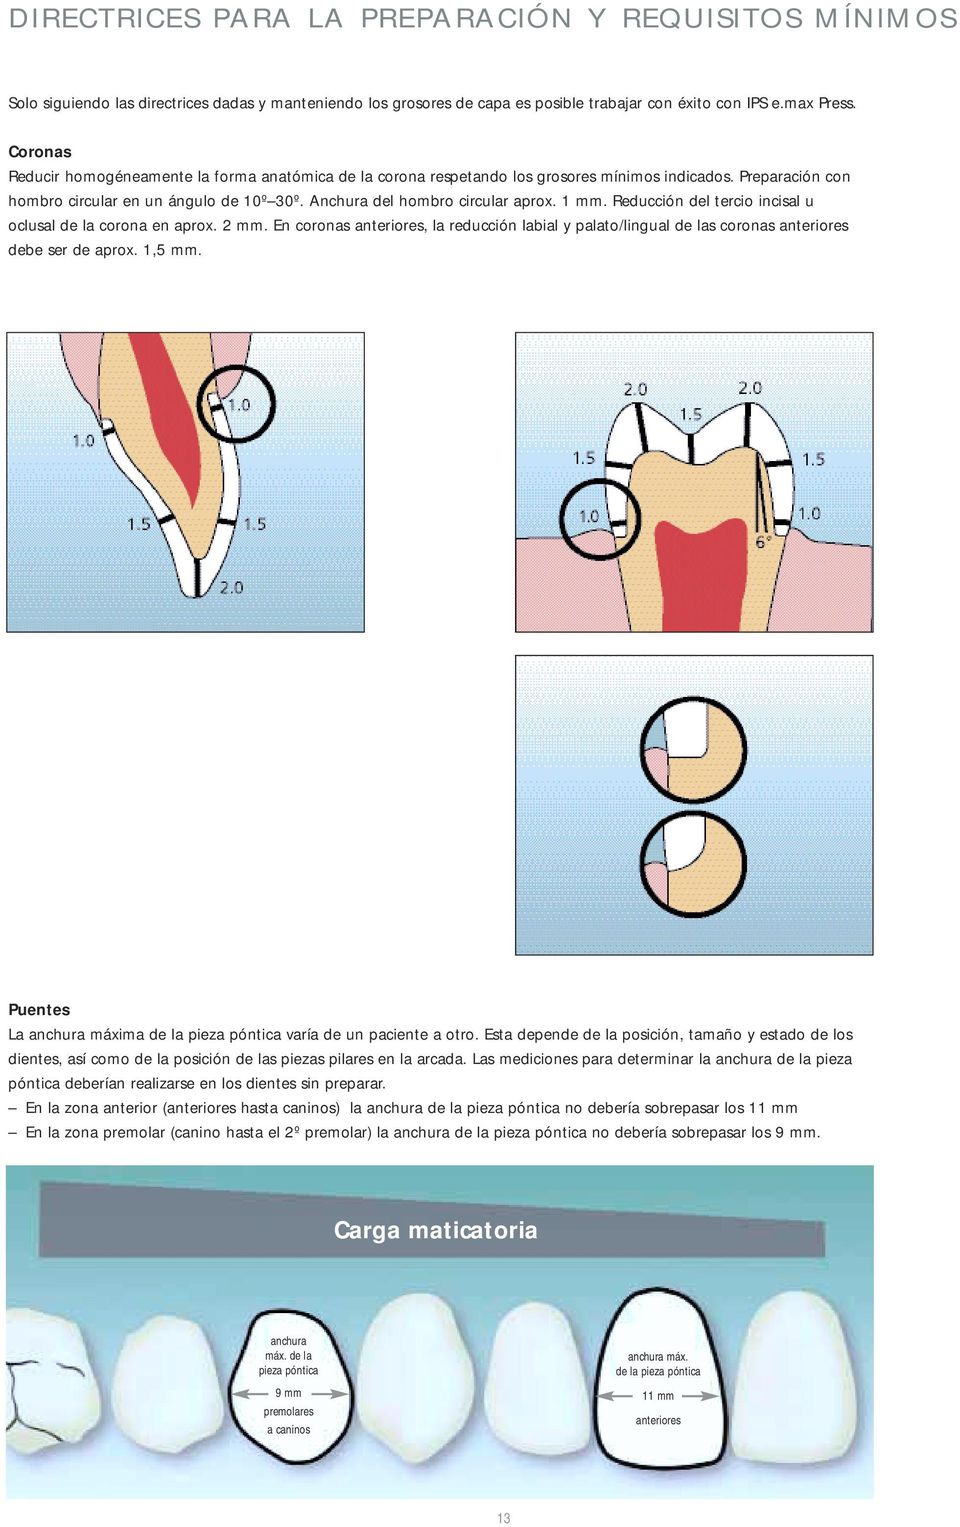 1 mm. Reducción del tercio incisal u oclusal de la corona en aprox. 2 mm. En coronas anteriores, la reducción labial y palato/lingual de las coronas anteriores debe ser de aprox. 1,5 mm.